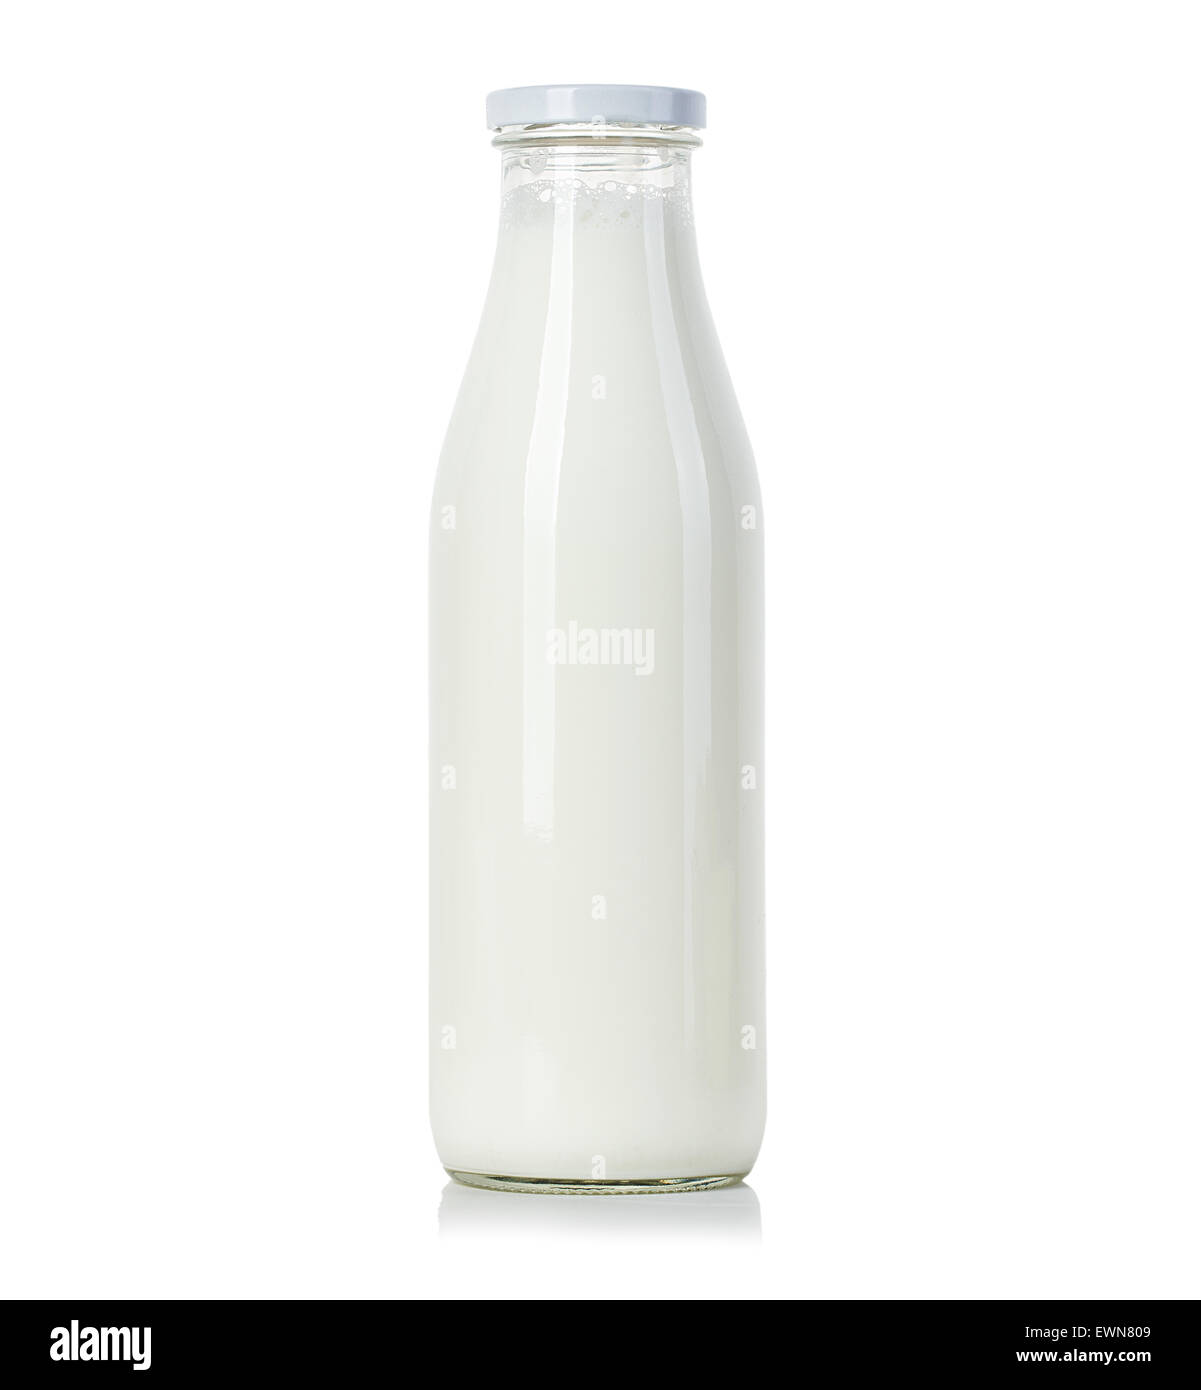 Bouteille de lait isolé sur fond blanc Banque D'Images